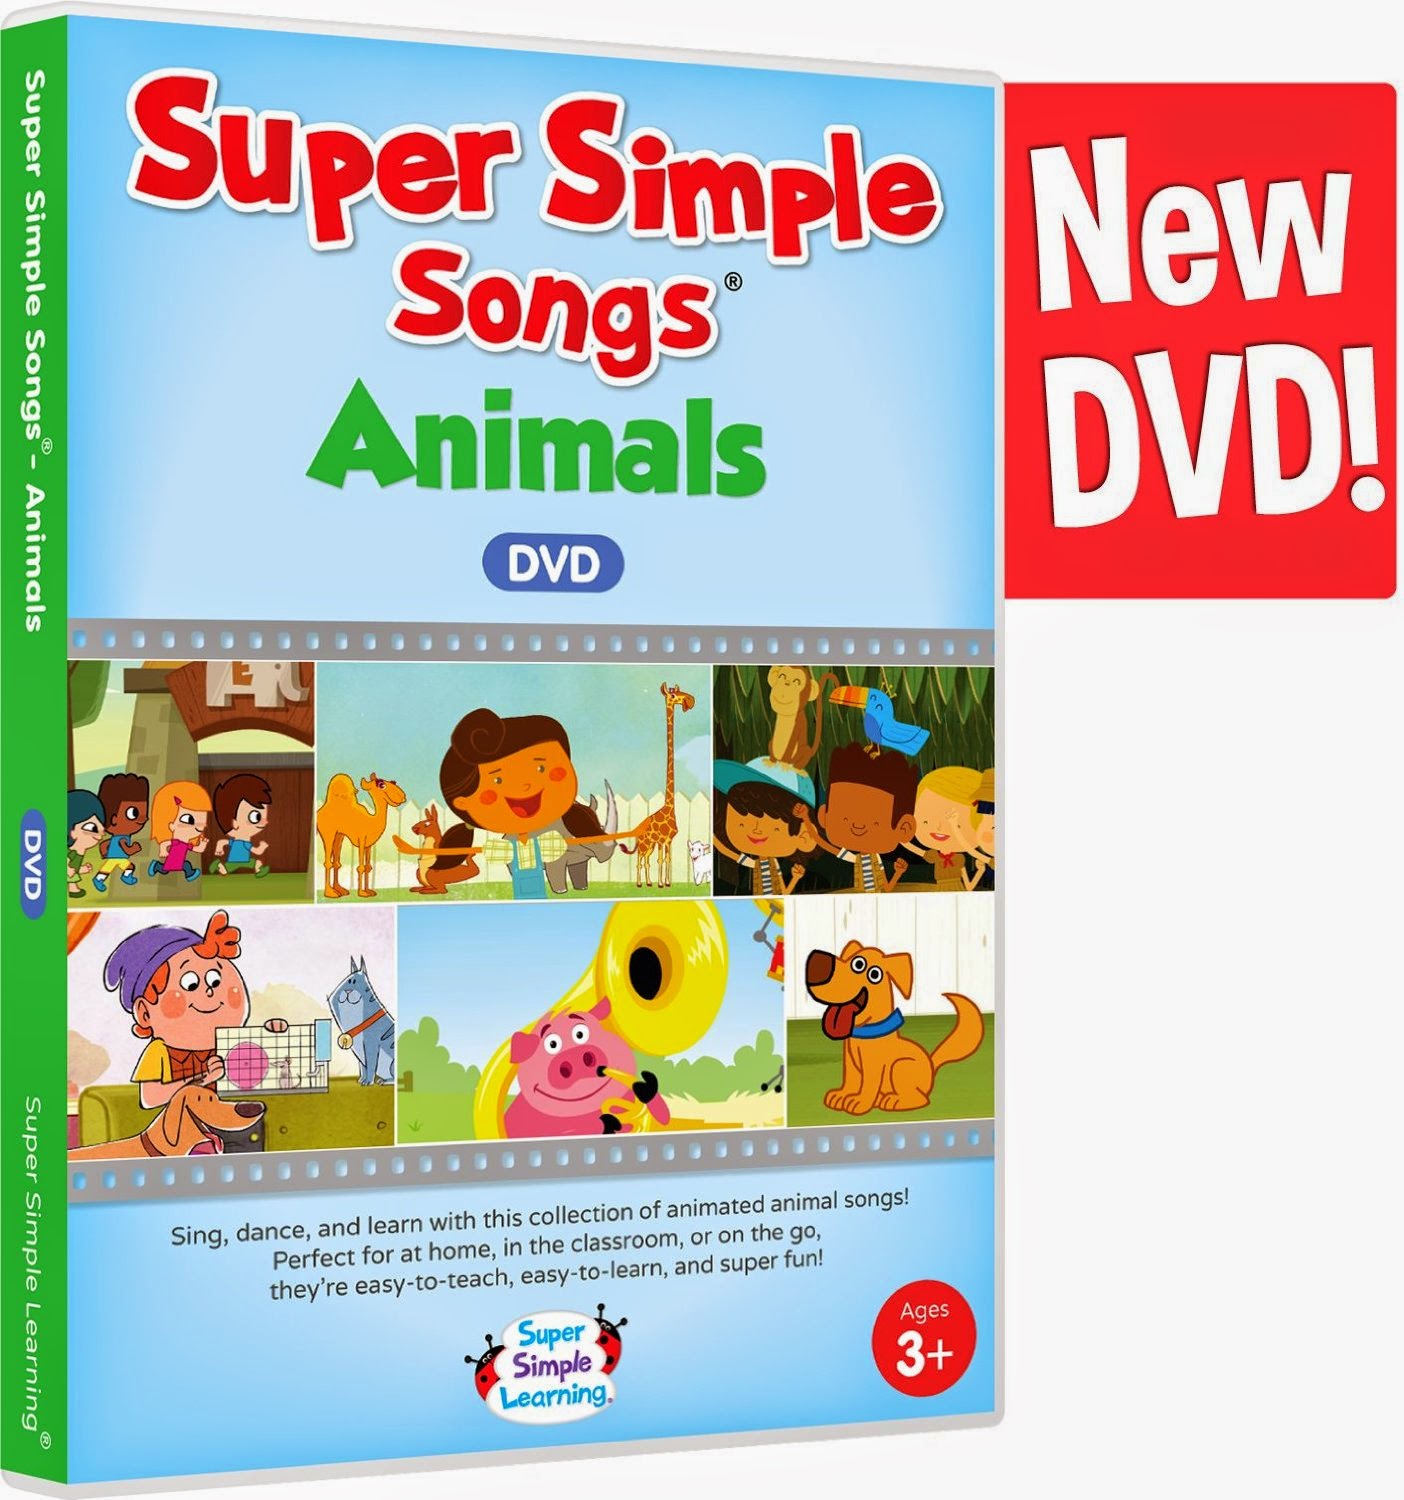 Baby simple songs. Супер Симпл Сонг. Super simple Songs. Super simple Songs animals. Simple Learning Songs.